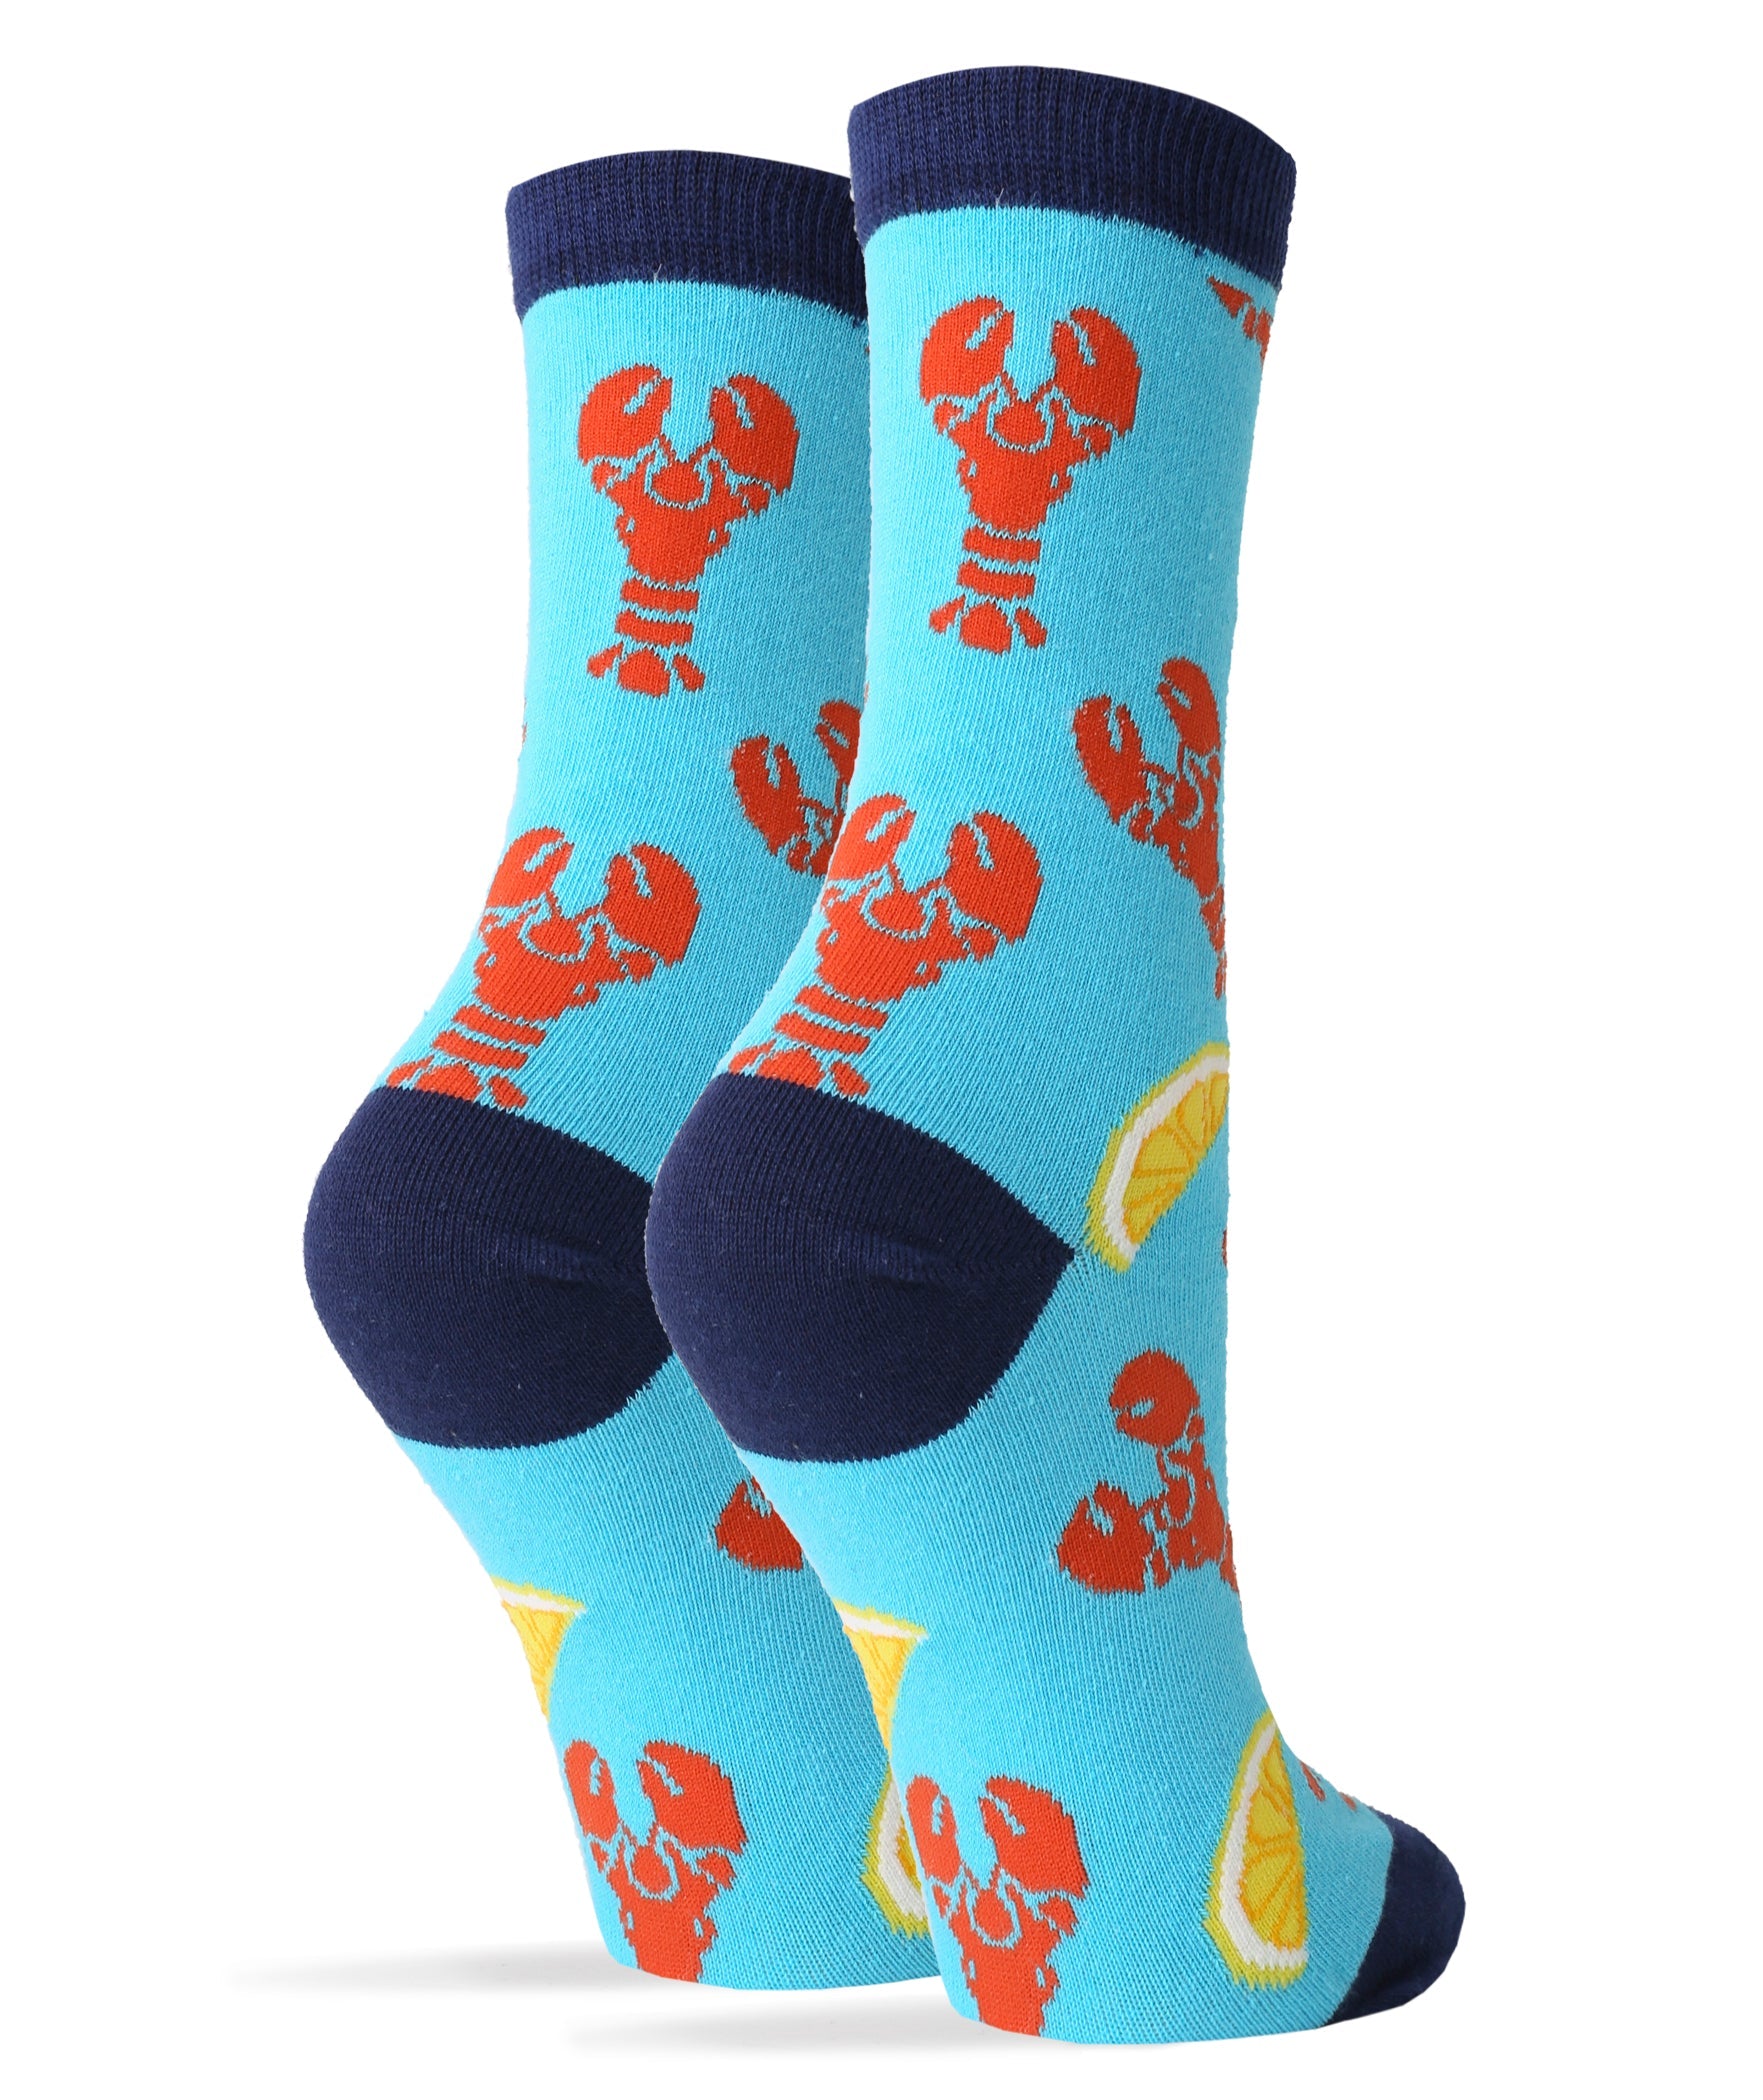 lobster-bake-womens-crew-socks-2-oooh-yeah-socks